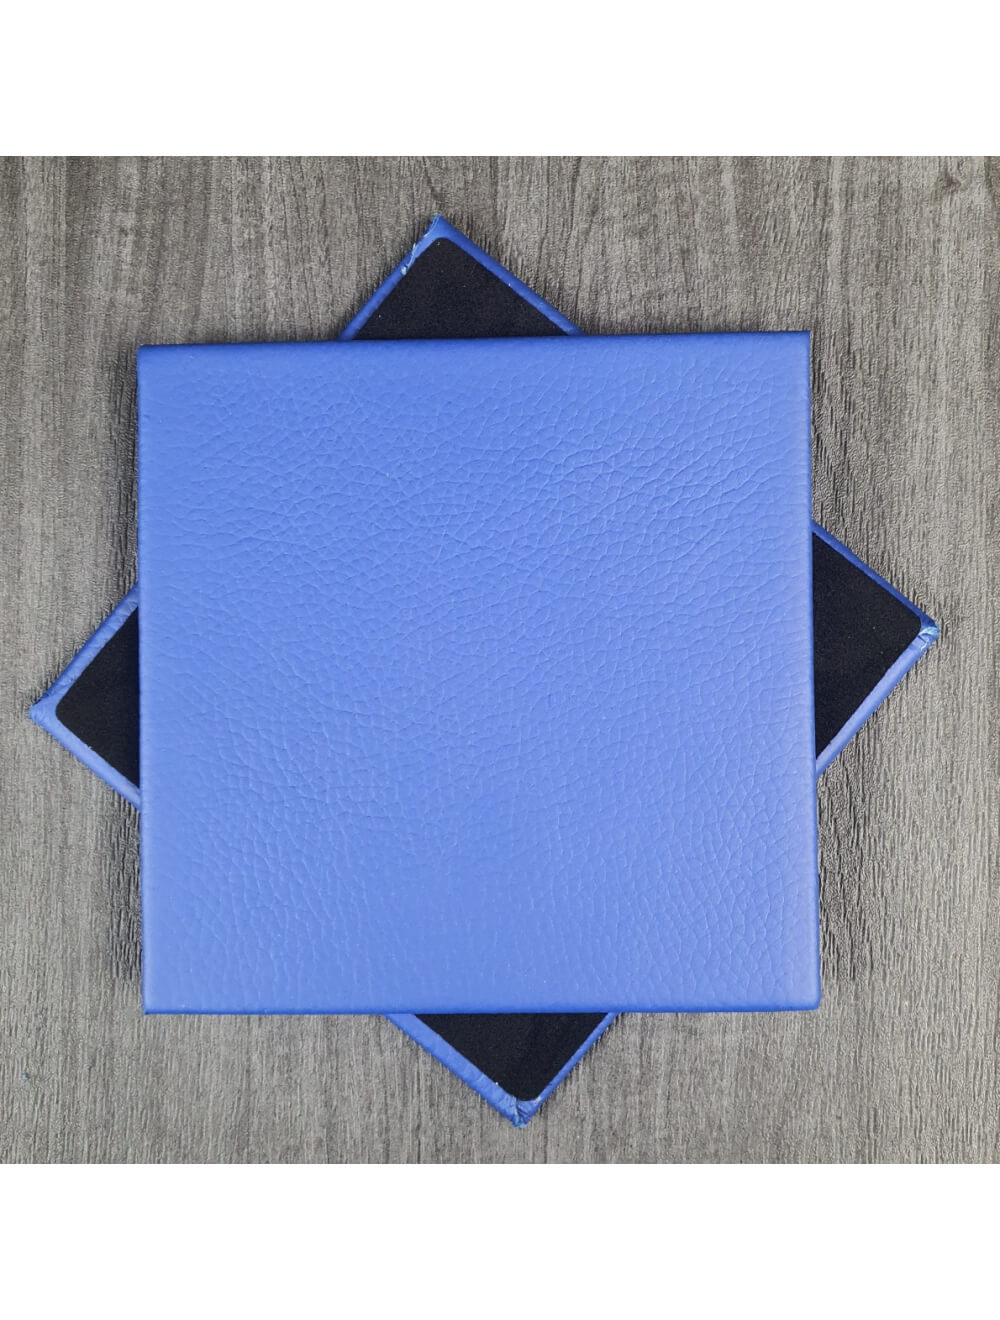 Deep Ultramarine Shelly kožni podmetač - 10 cm kvadratnih (prodajni artikl)